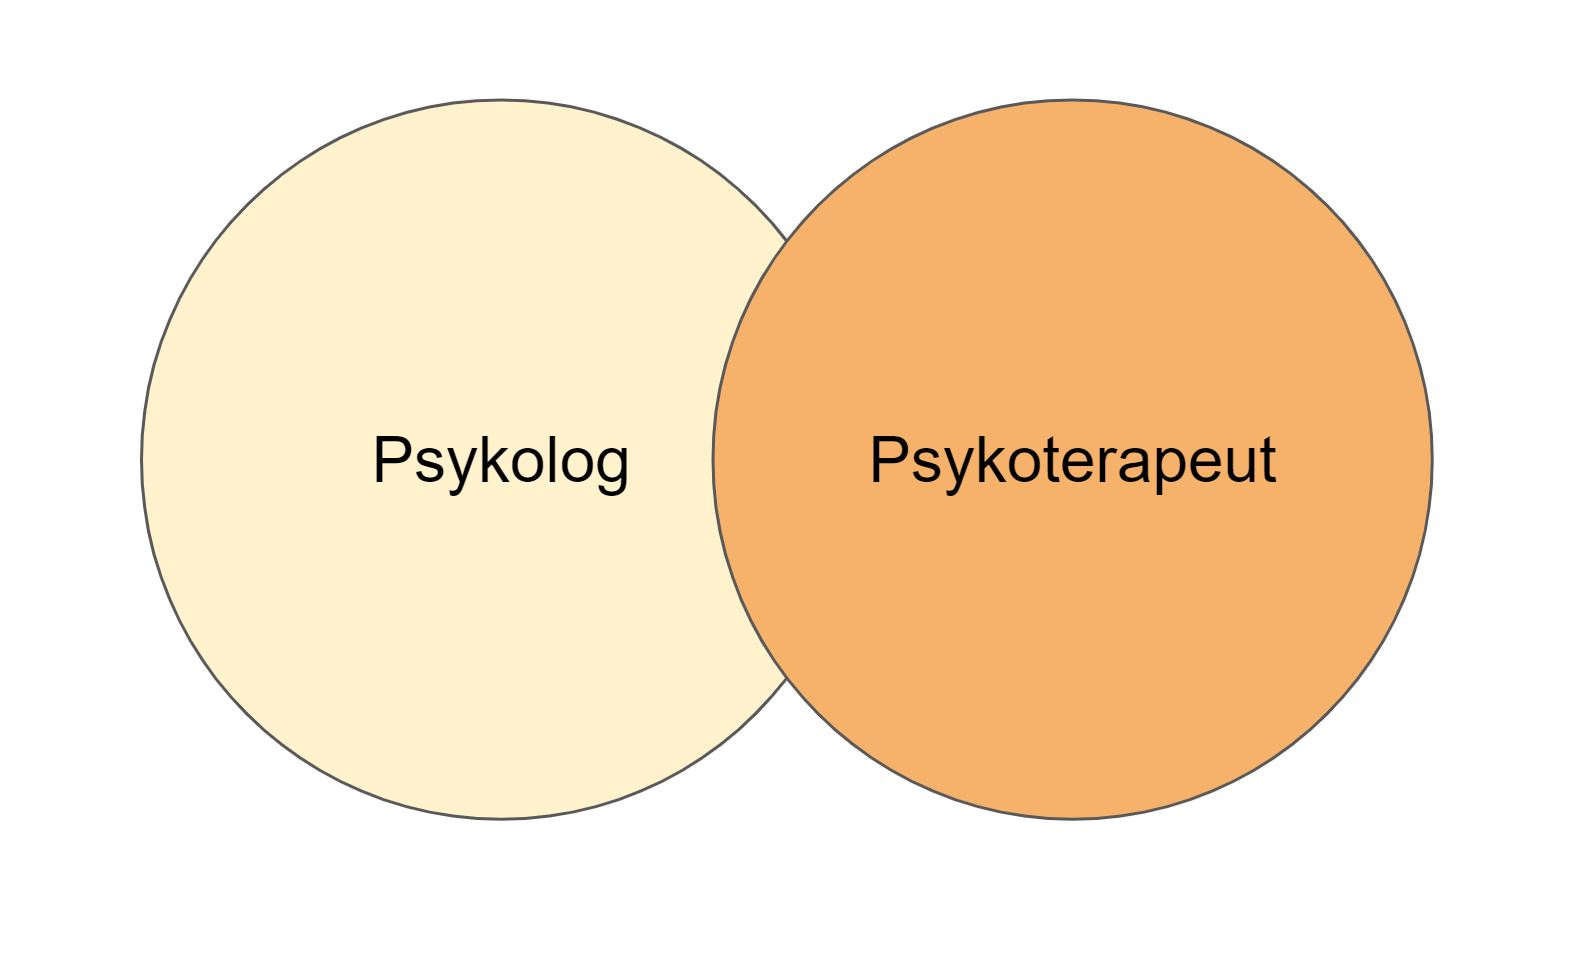 Forskellen på psykolog og psykoterapeut - Psykolog og psykoterapeut